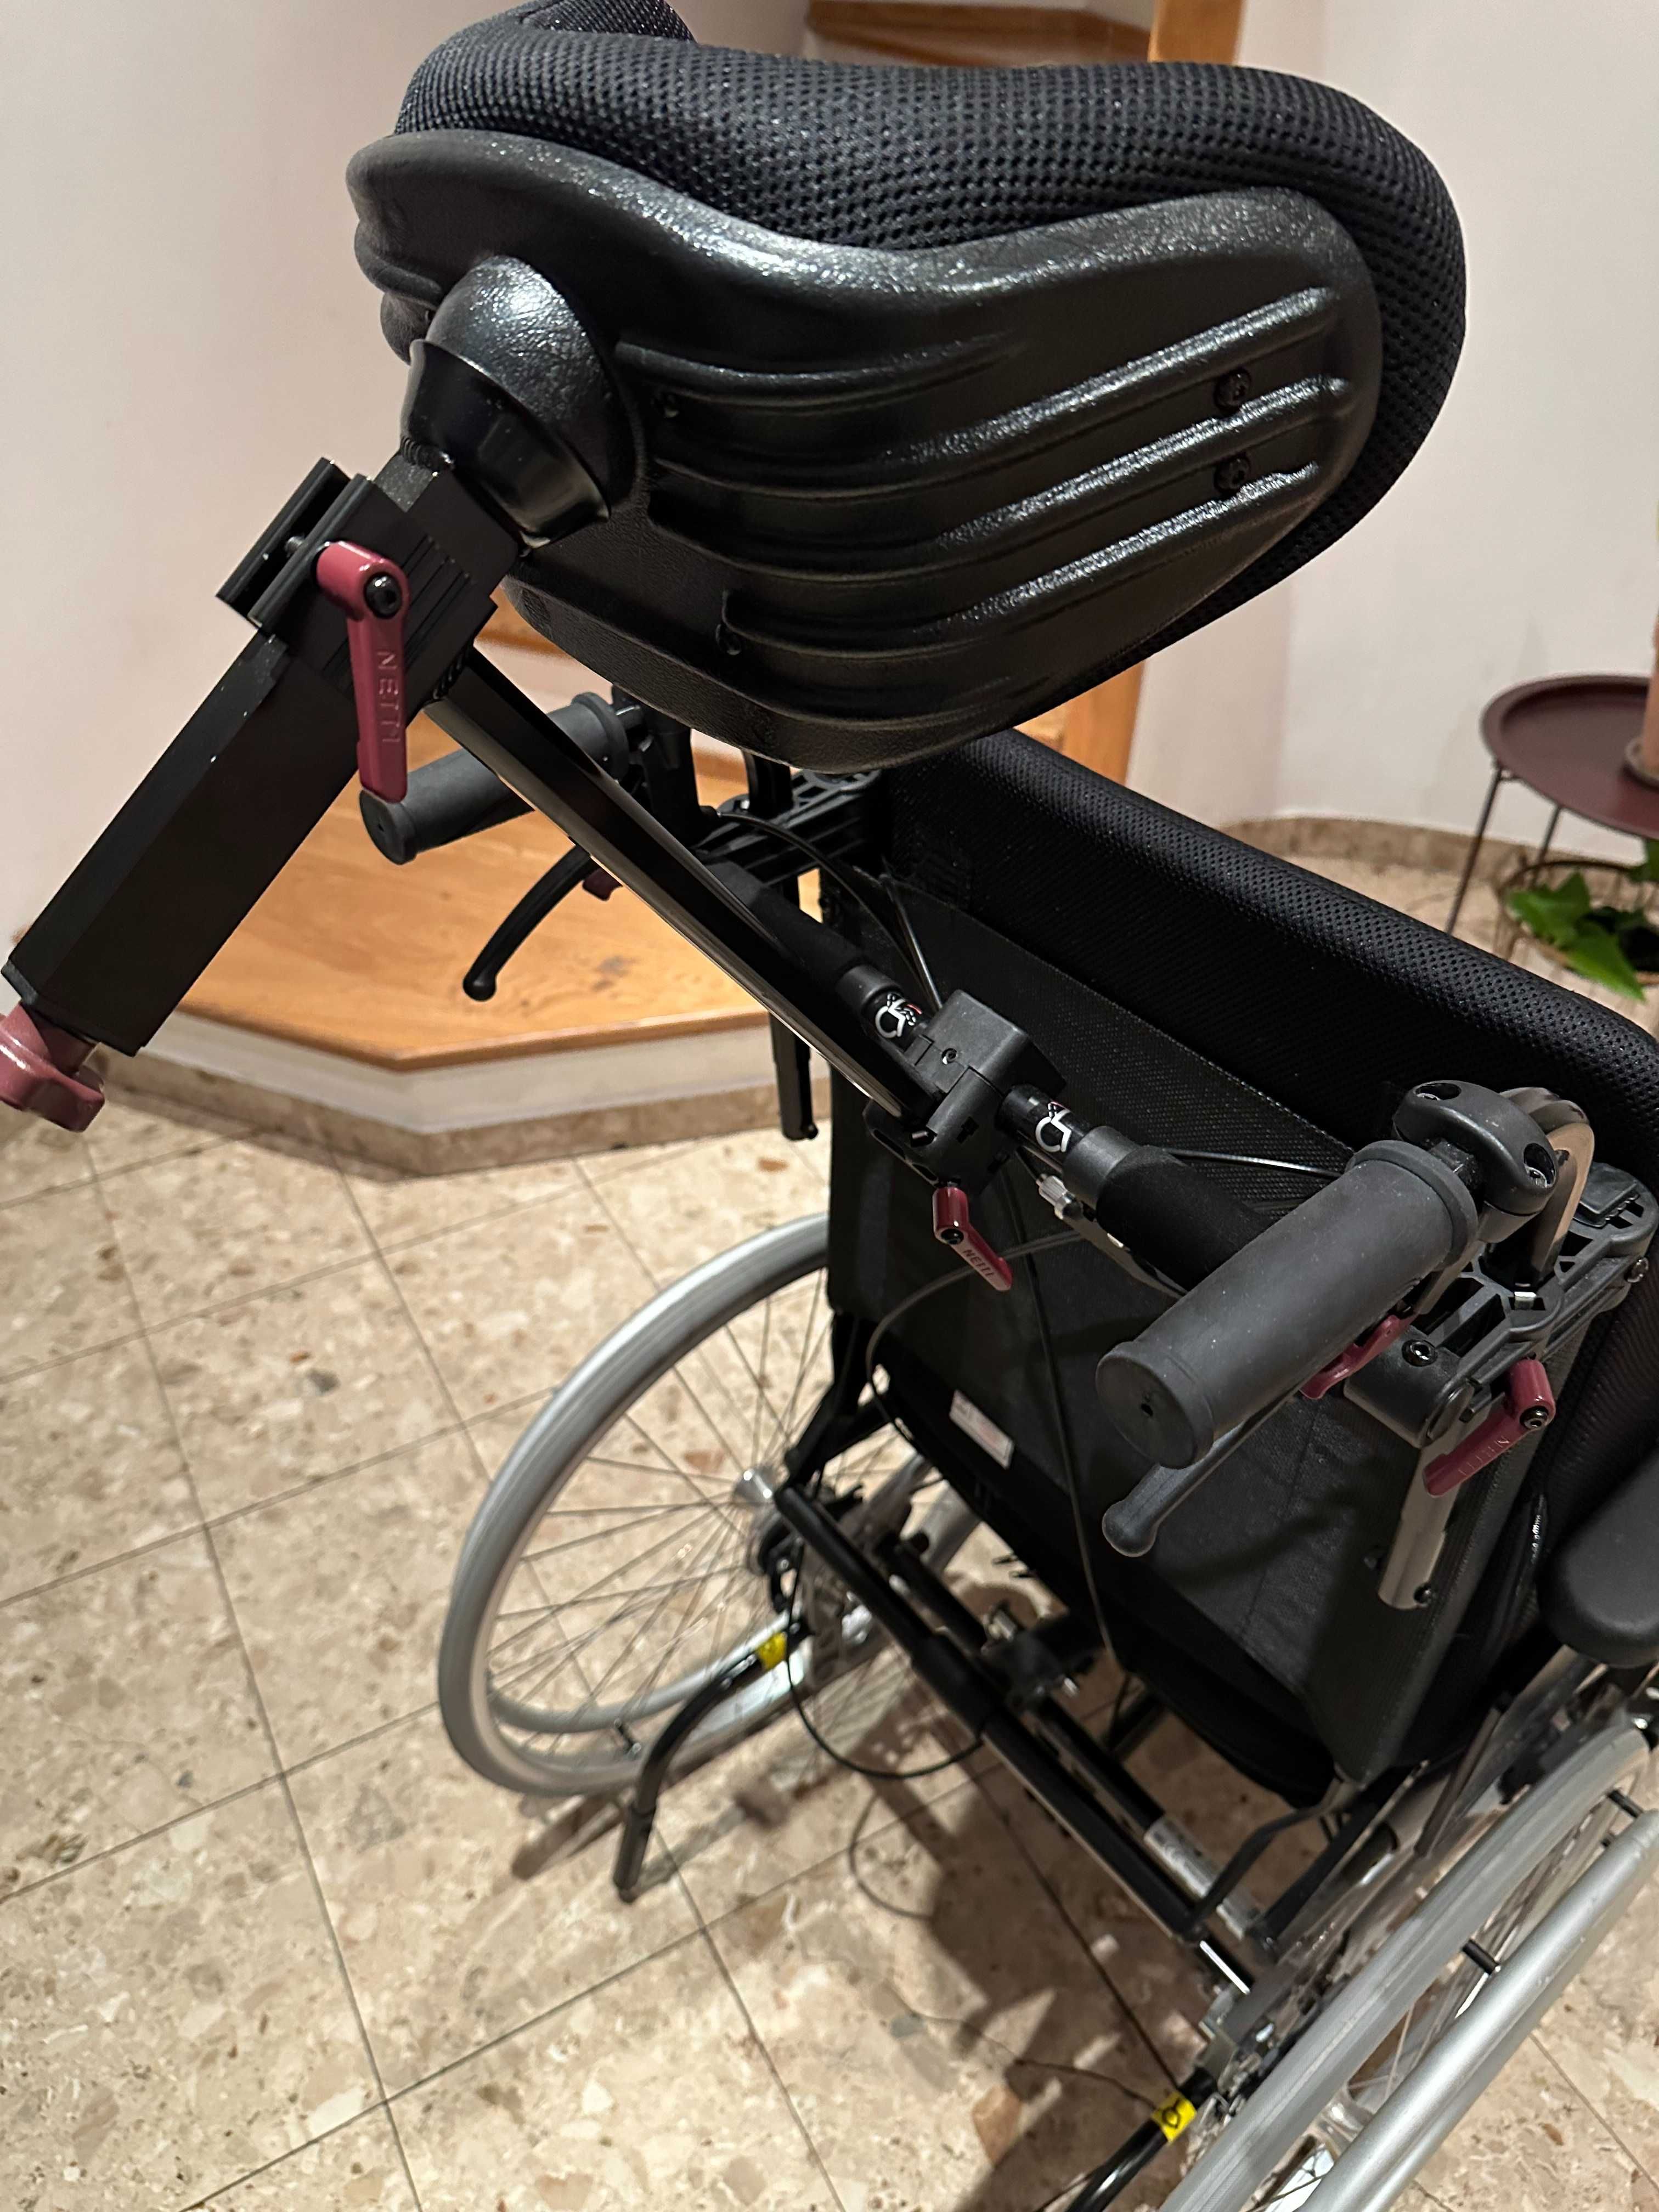 Wózek inwalidzki Netti 4U CE Plus Stan idealny